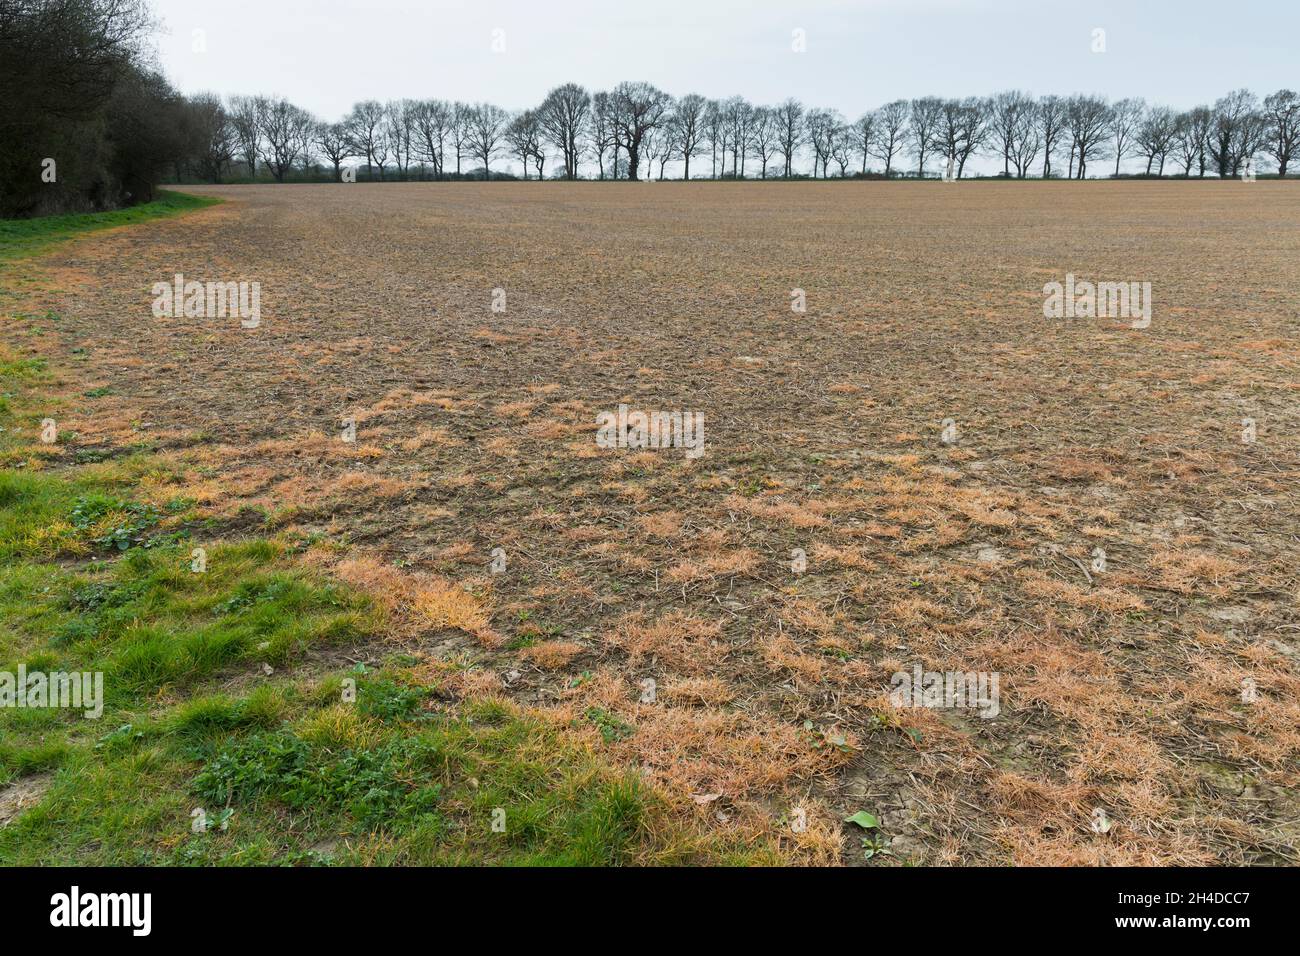 Unkrautvernichter, Glyphosat, ein chemisches Herbizid, wird auf ein Feld gesprüht, um Unkraut zu kontrollieren. Buckinghamshire, Großbritannien Stockfoto